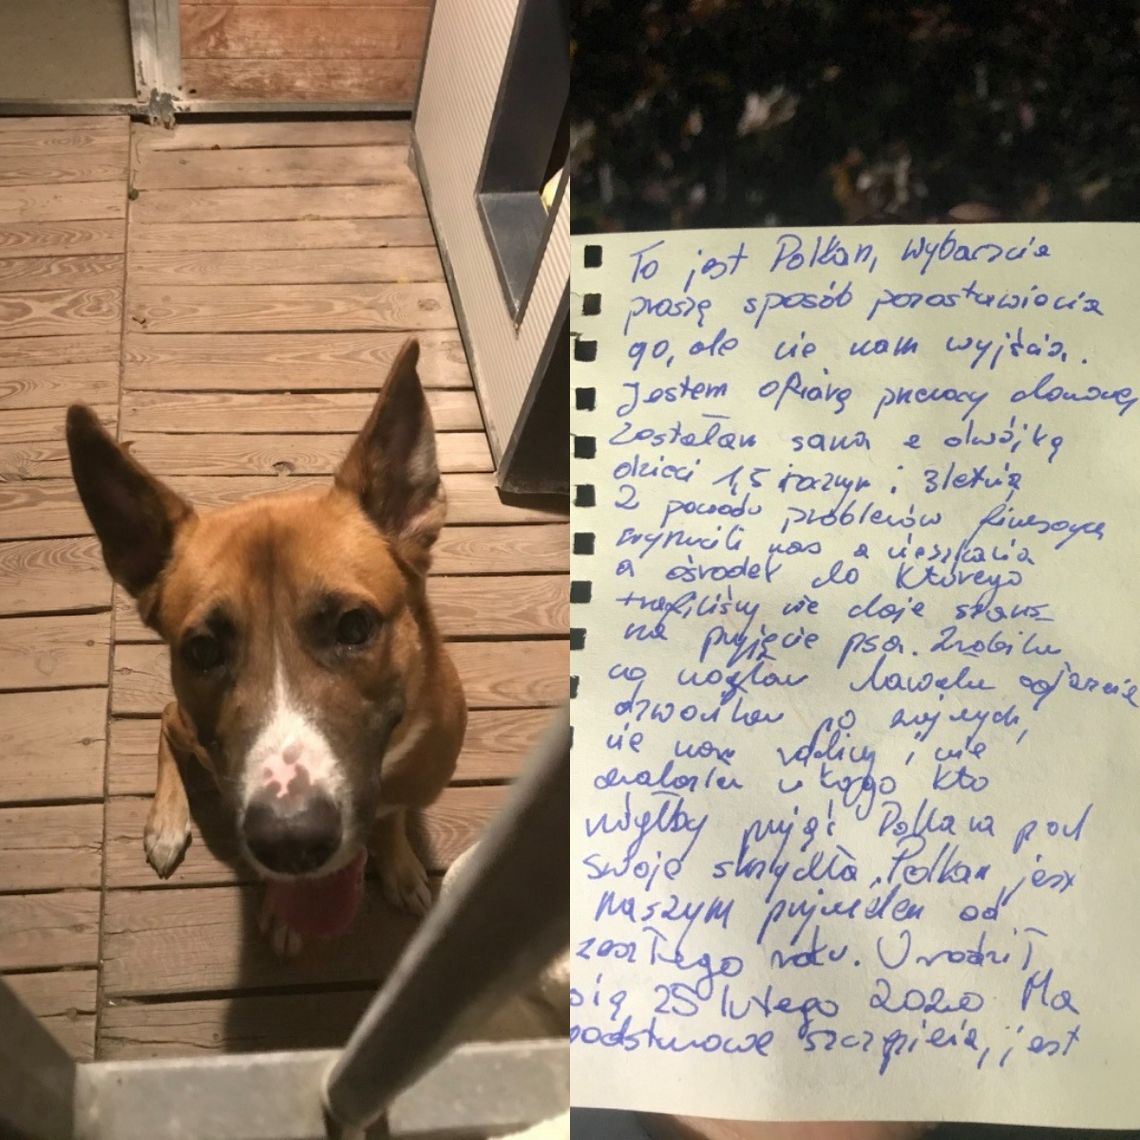 Zostawiła psa i wzruszający list. "Zrobiłam co mogłam, proszę, znajdźcie mu dobry dom..."